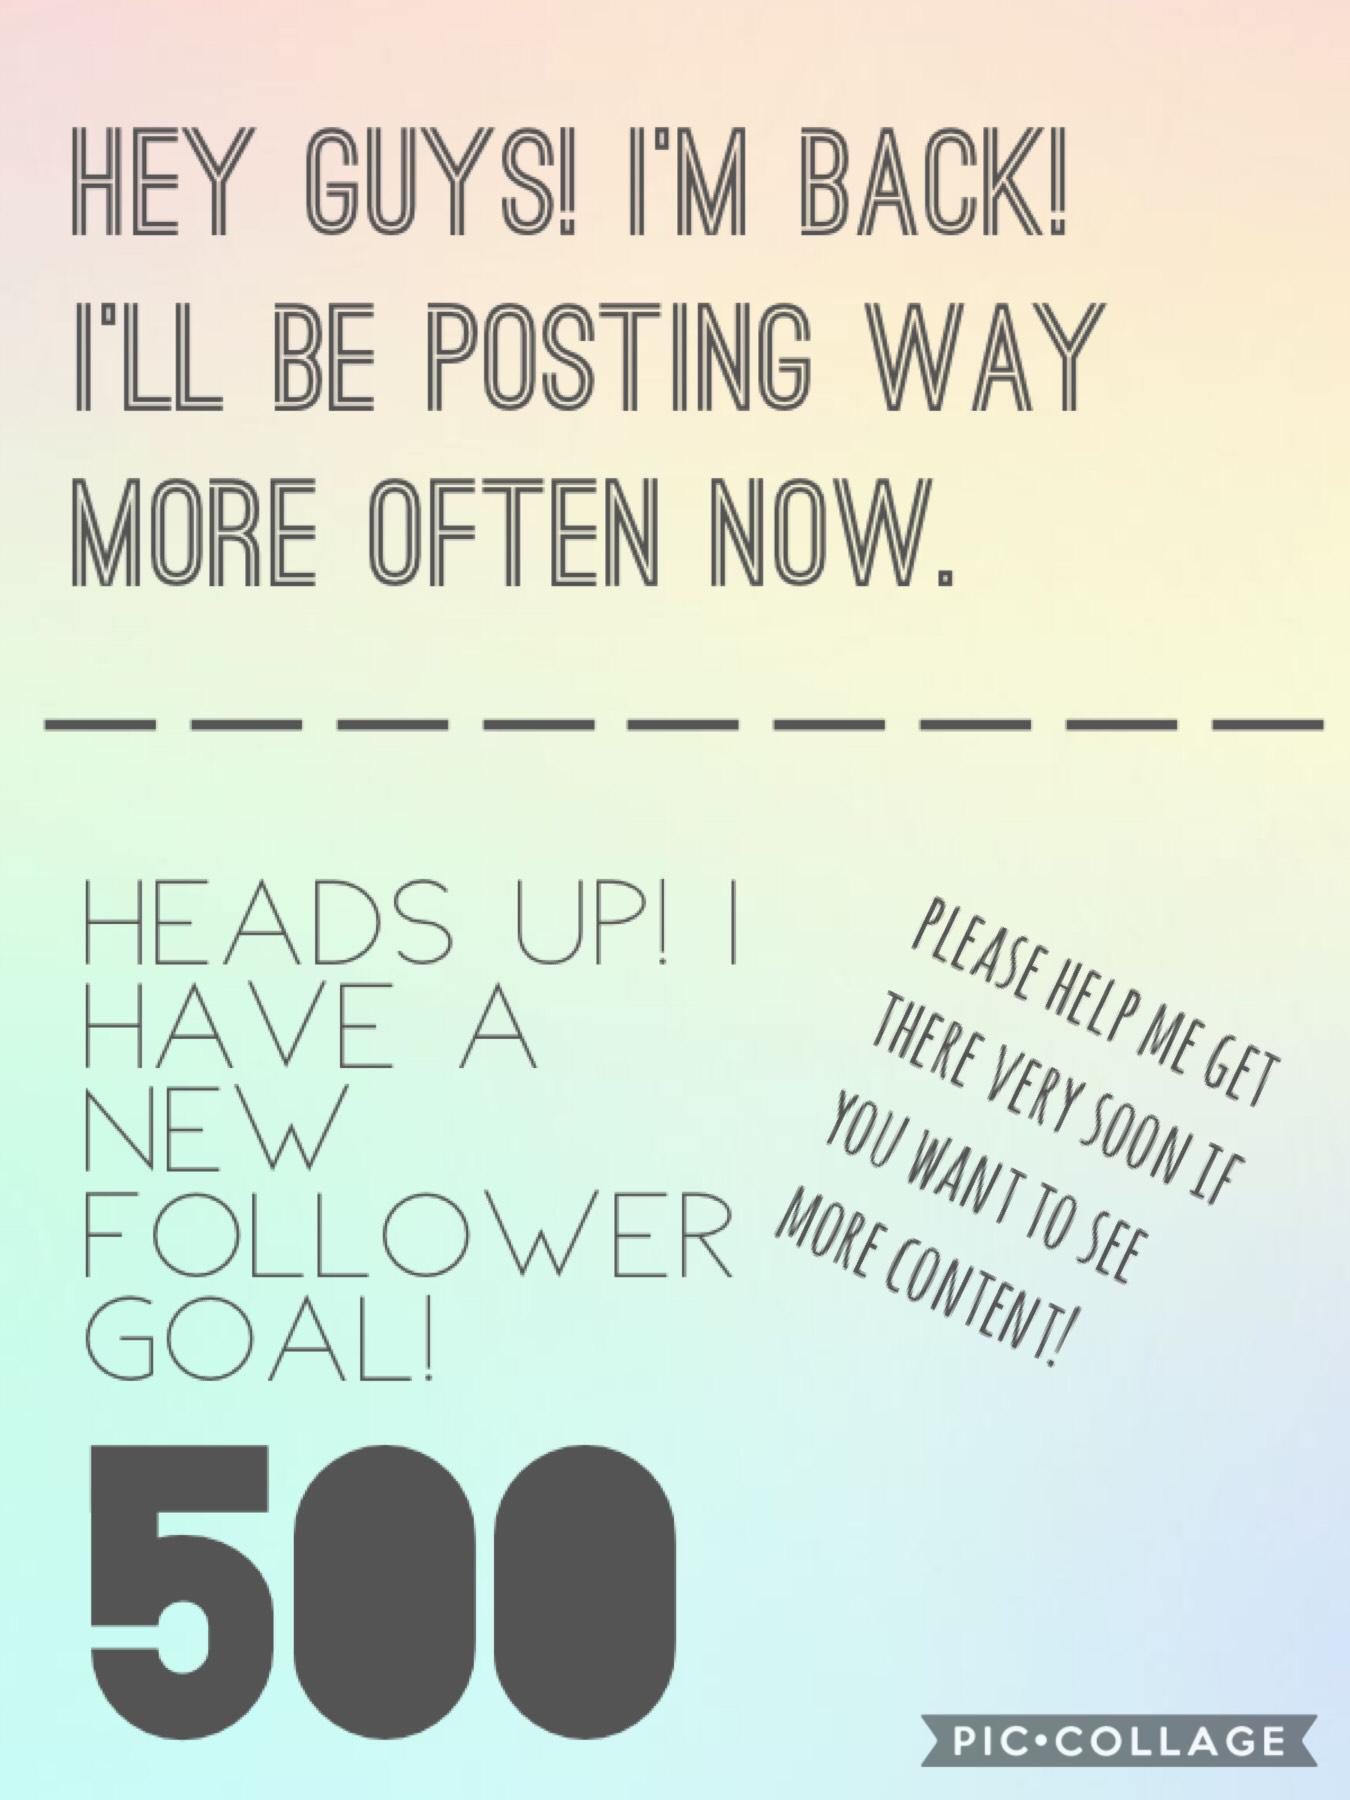 Follower goal: 500! Help me!!